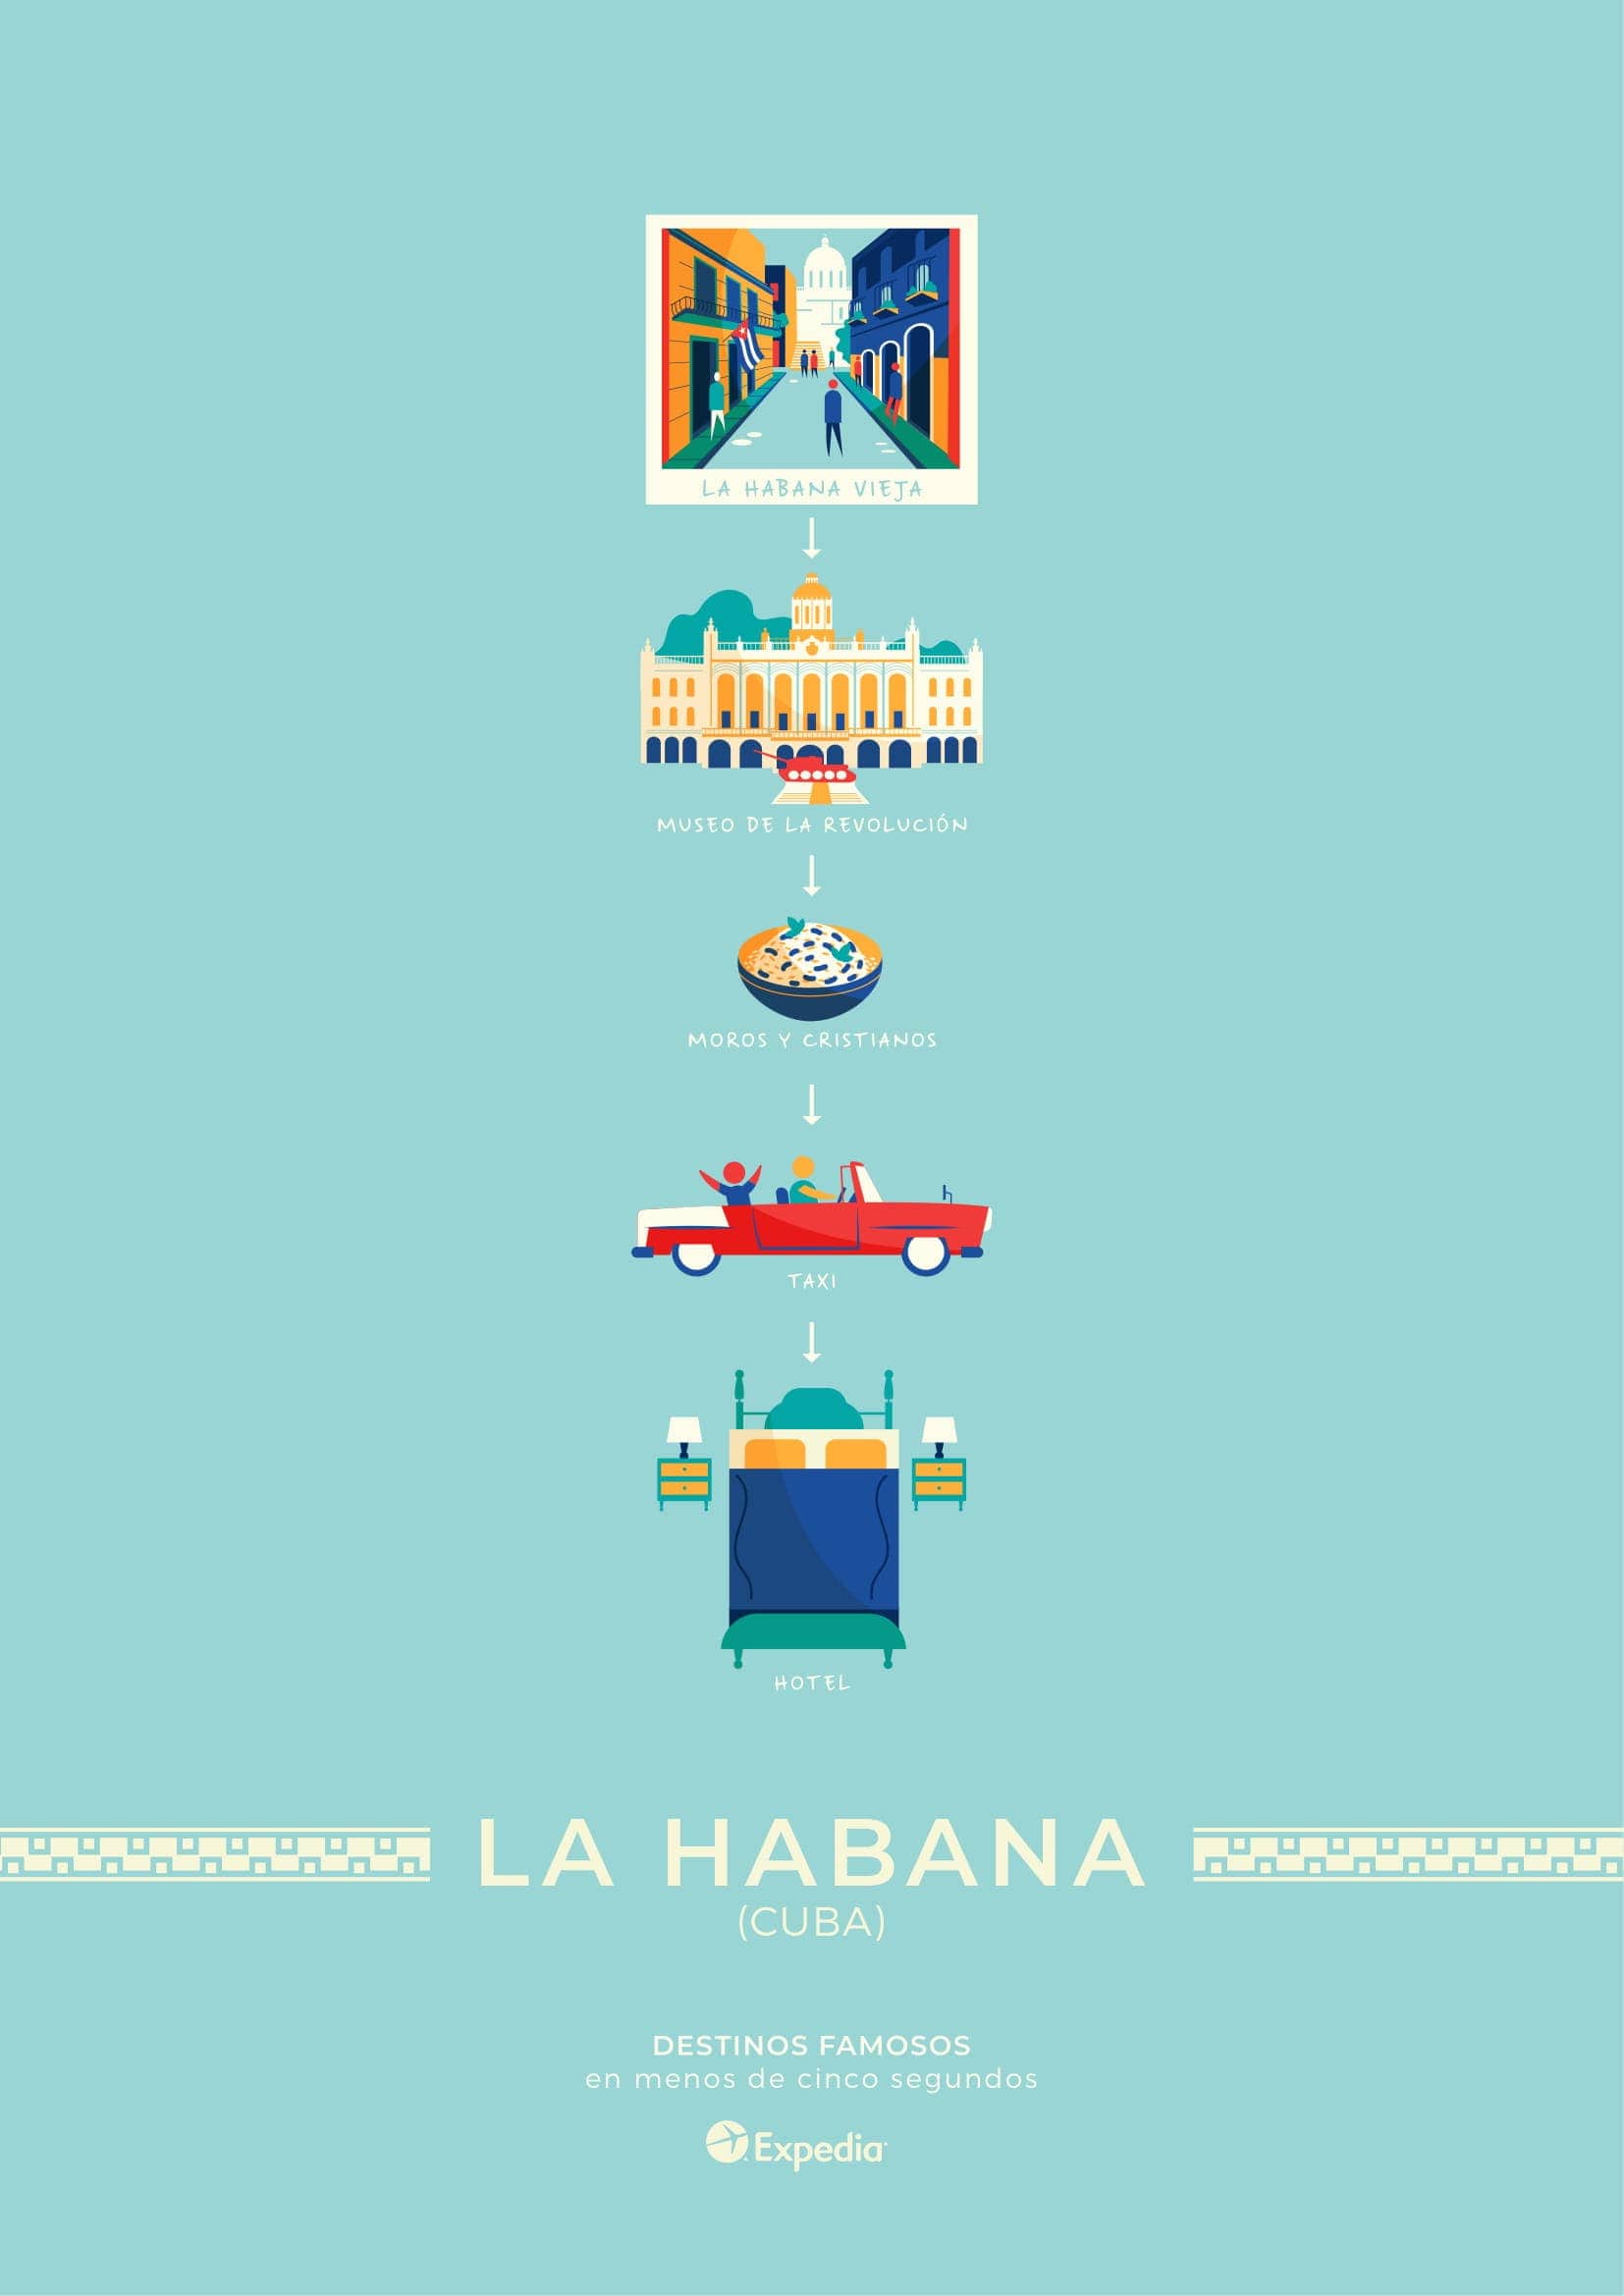 La Habana, Cuba: como viajar rapido y conocer algo nuevo